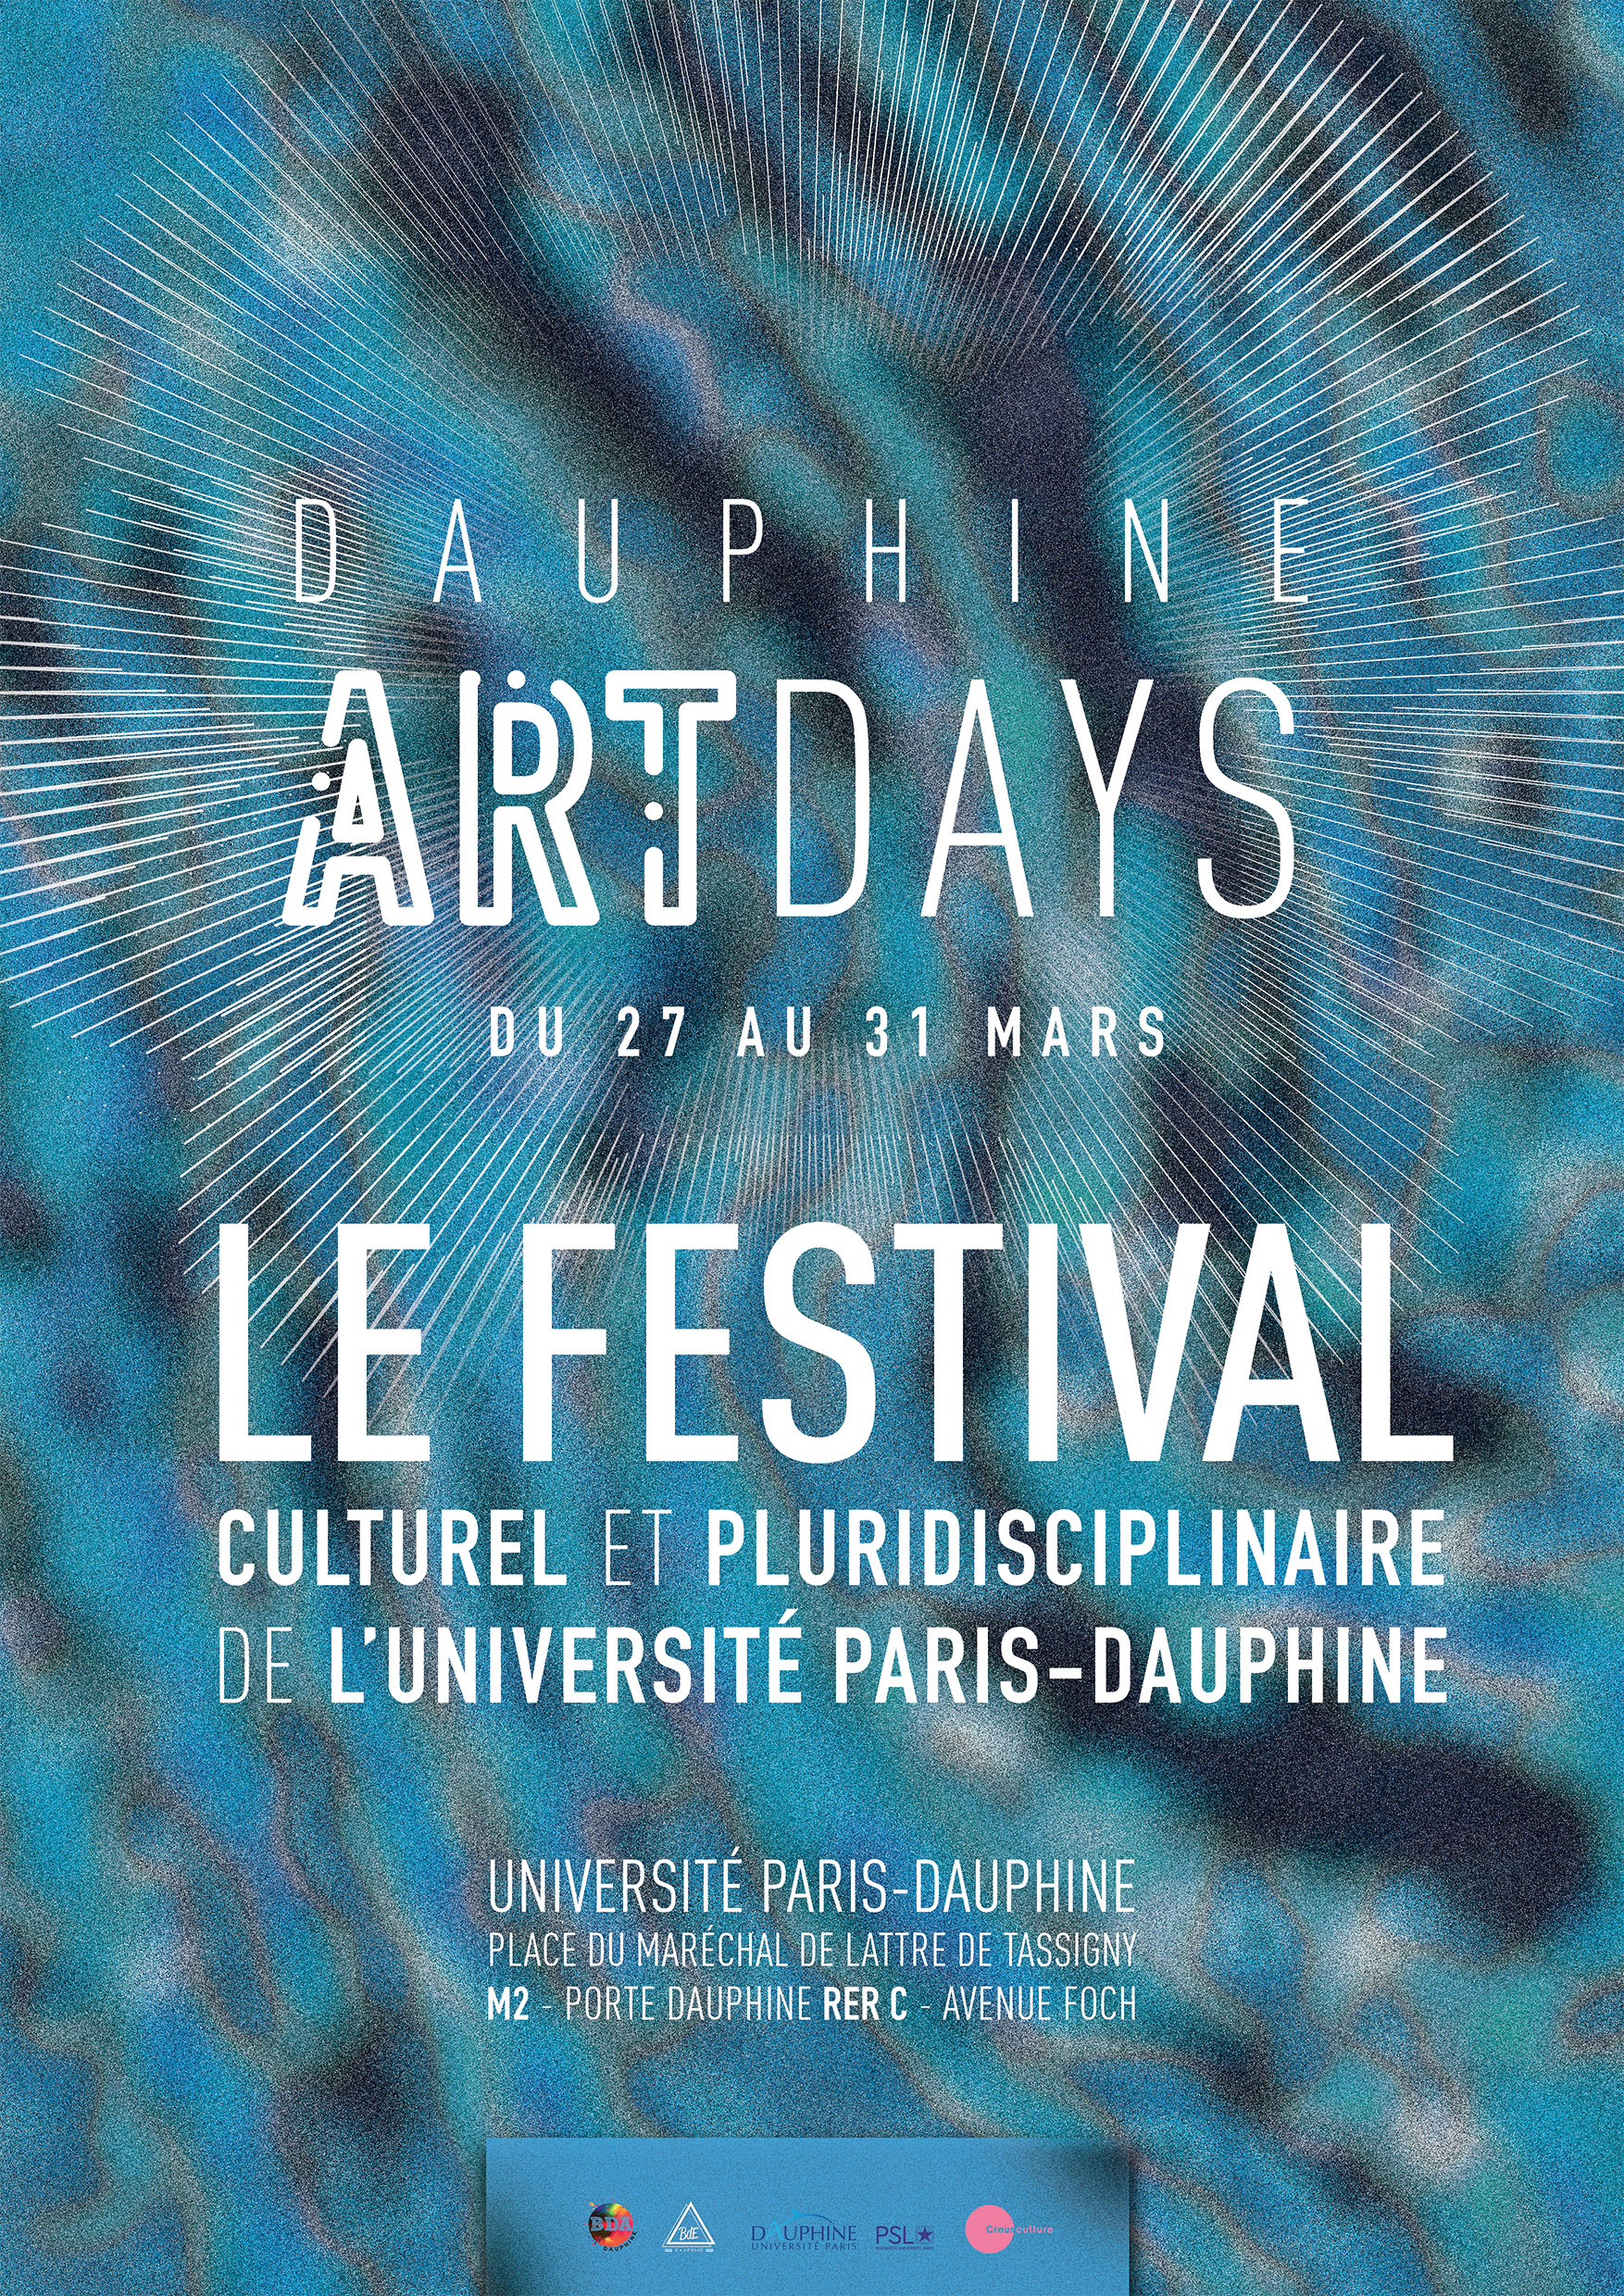 Les Dauphine Art Days 2017, une édition immersive